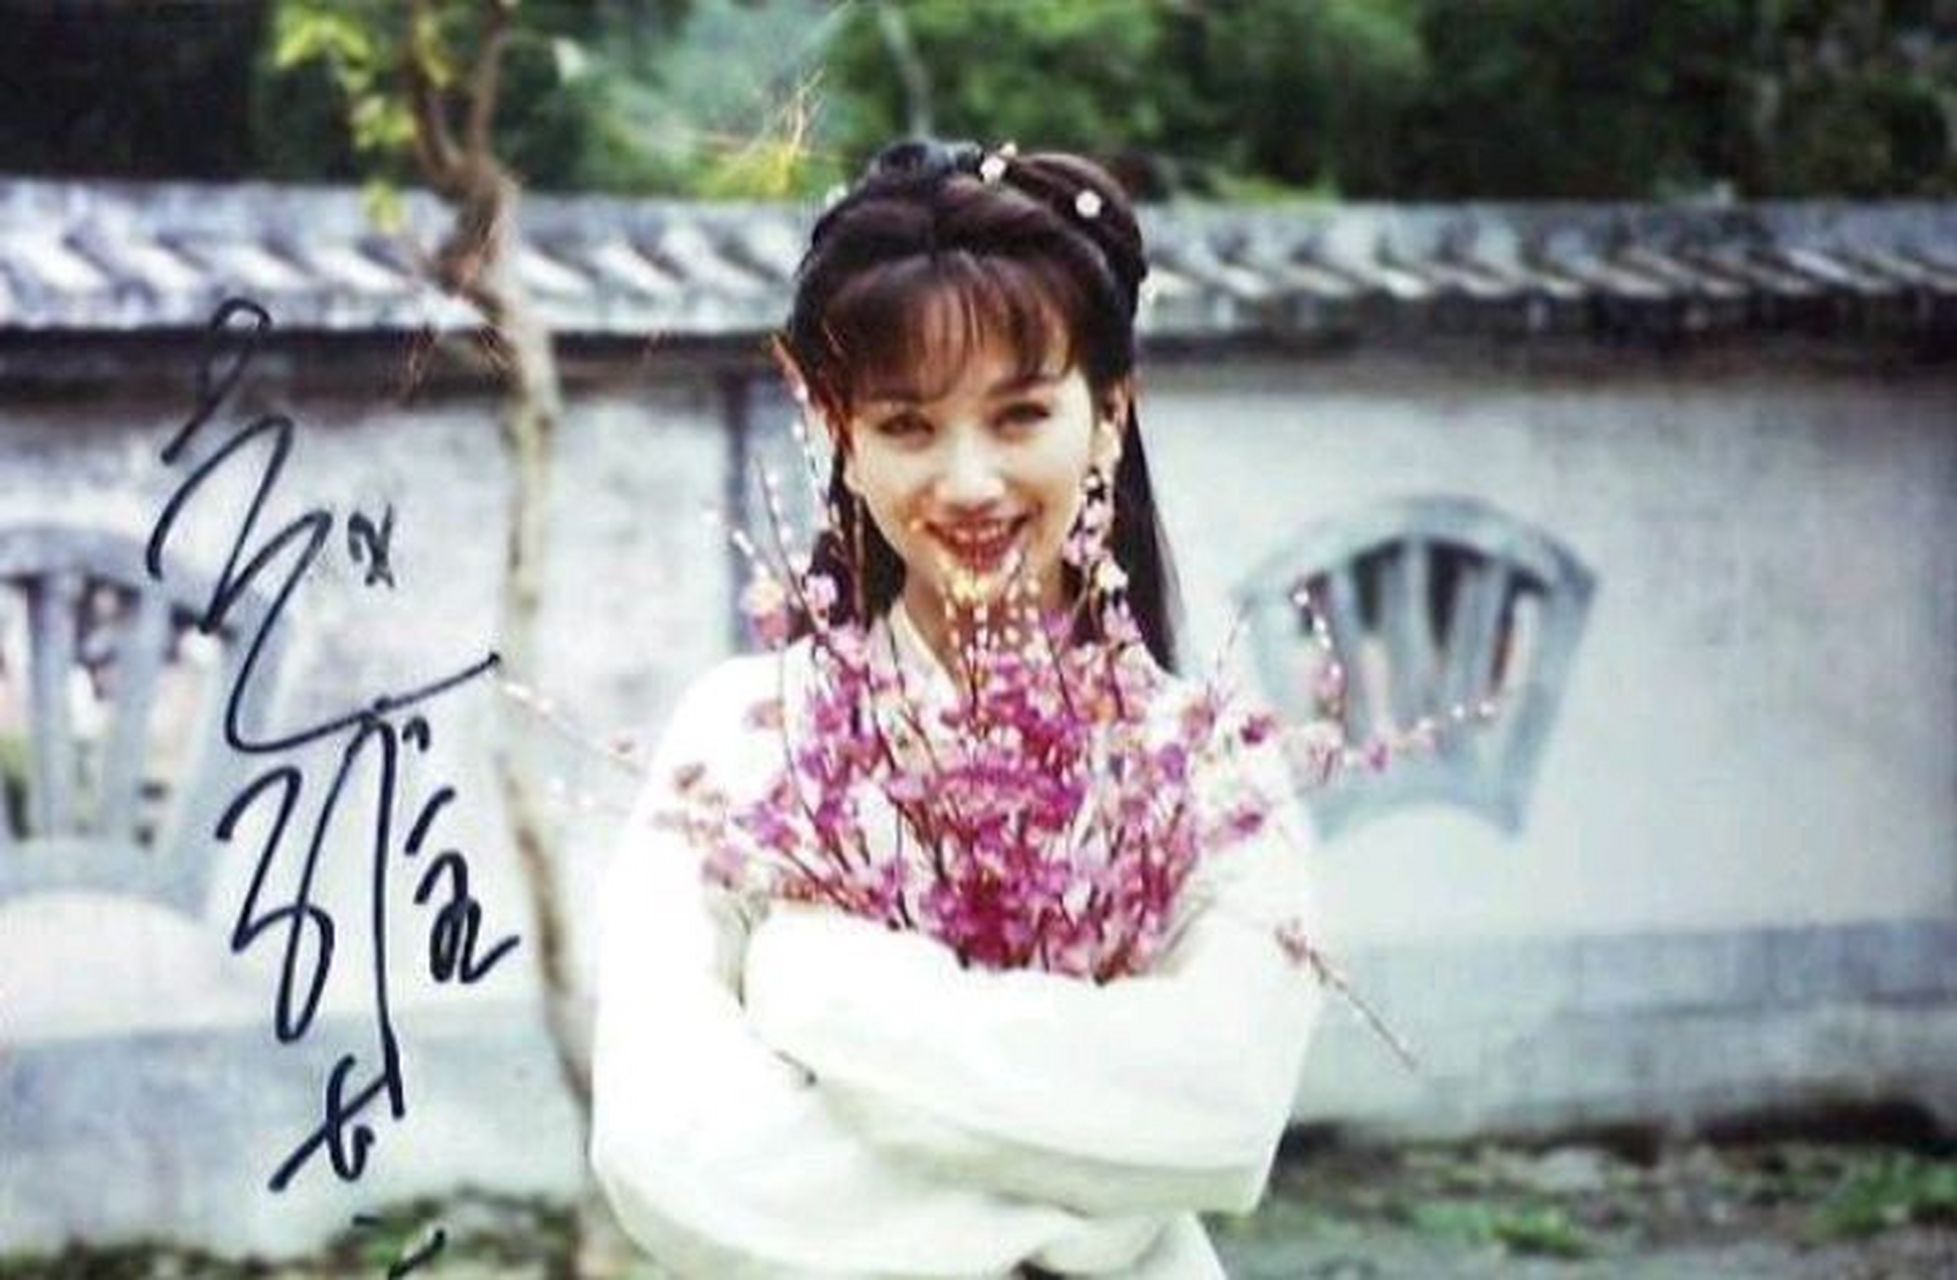 1994年,拍摄《状元花》(又名《笑看良缘》)期间的赵雅芝